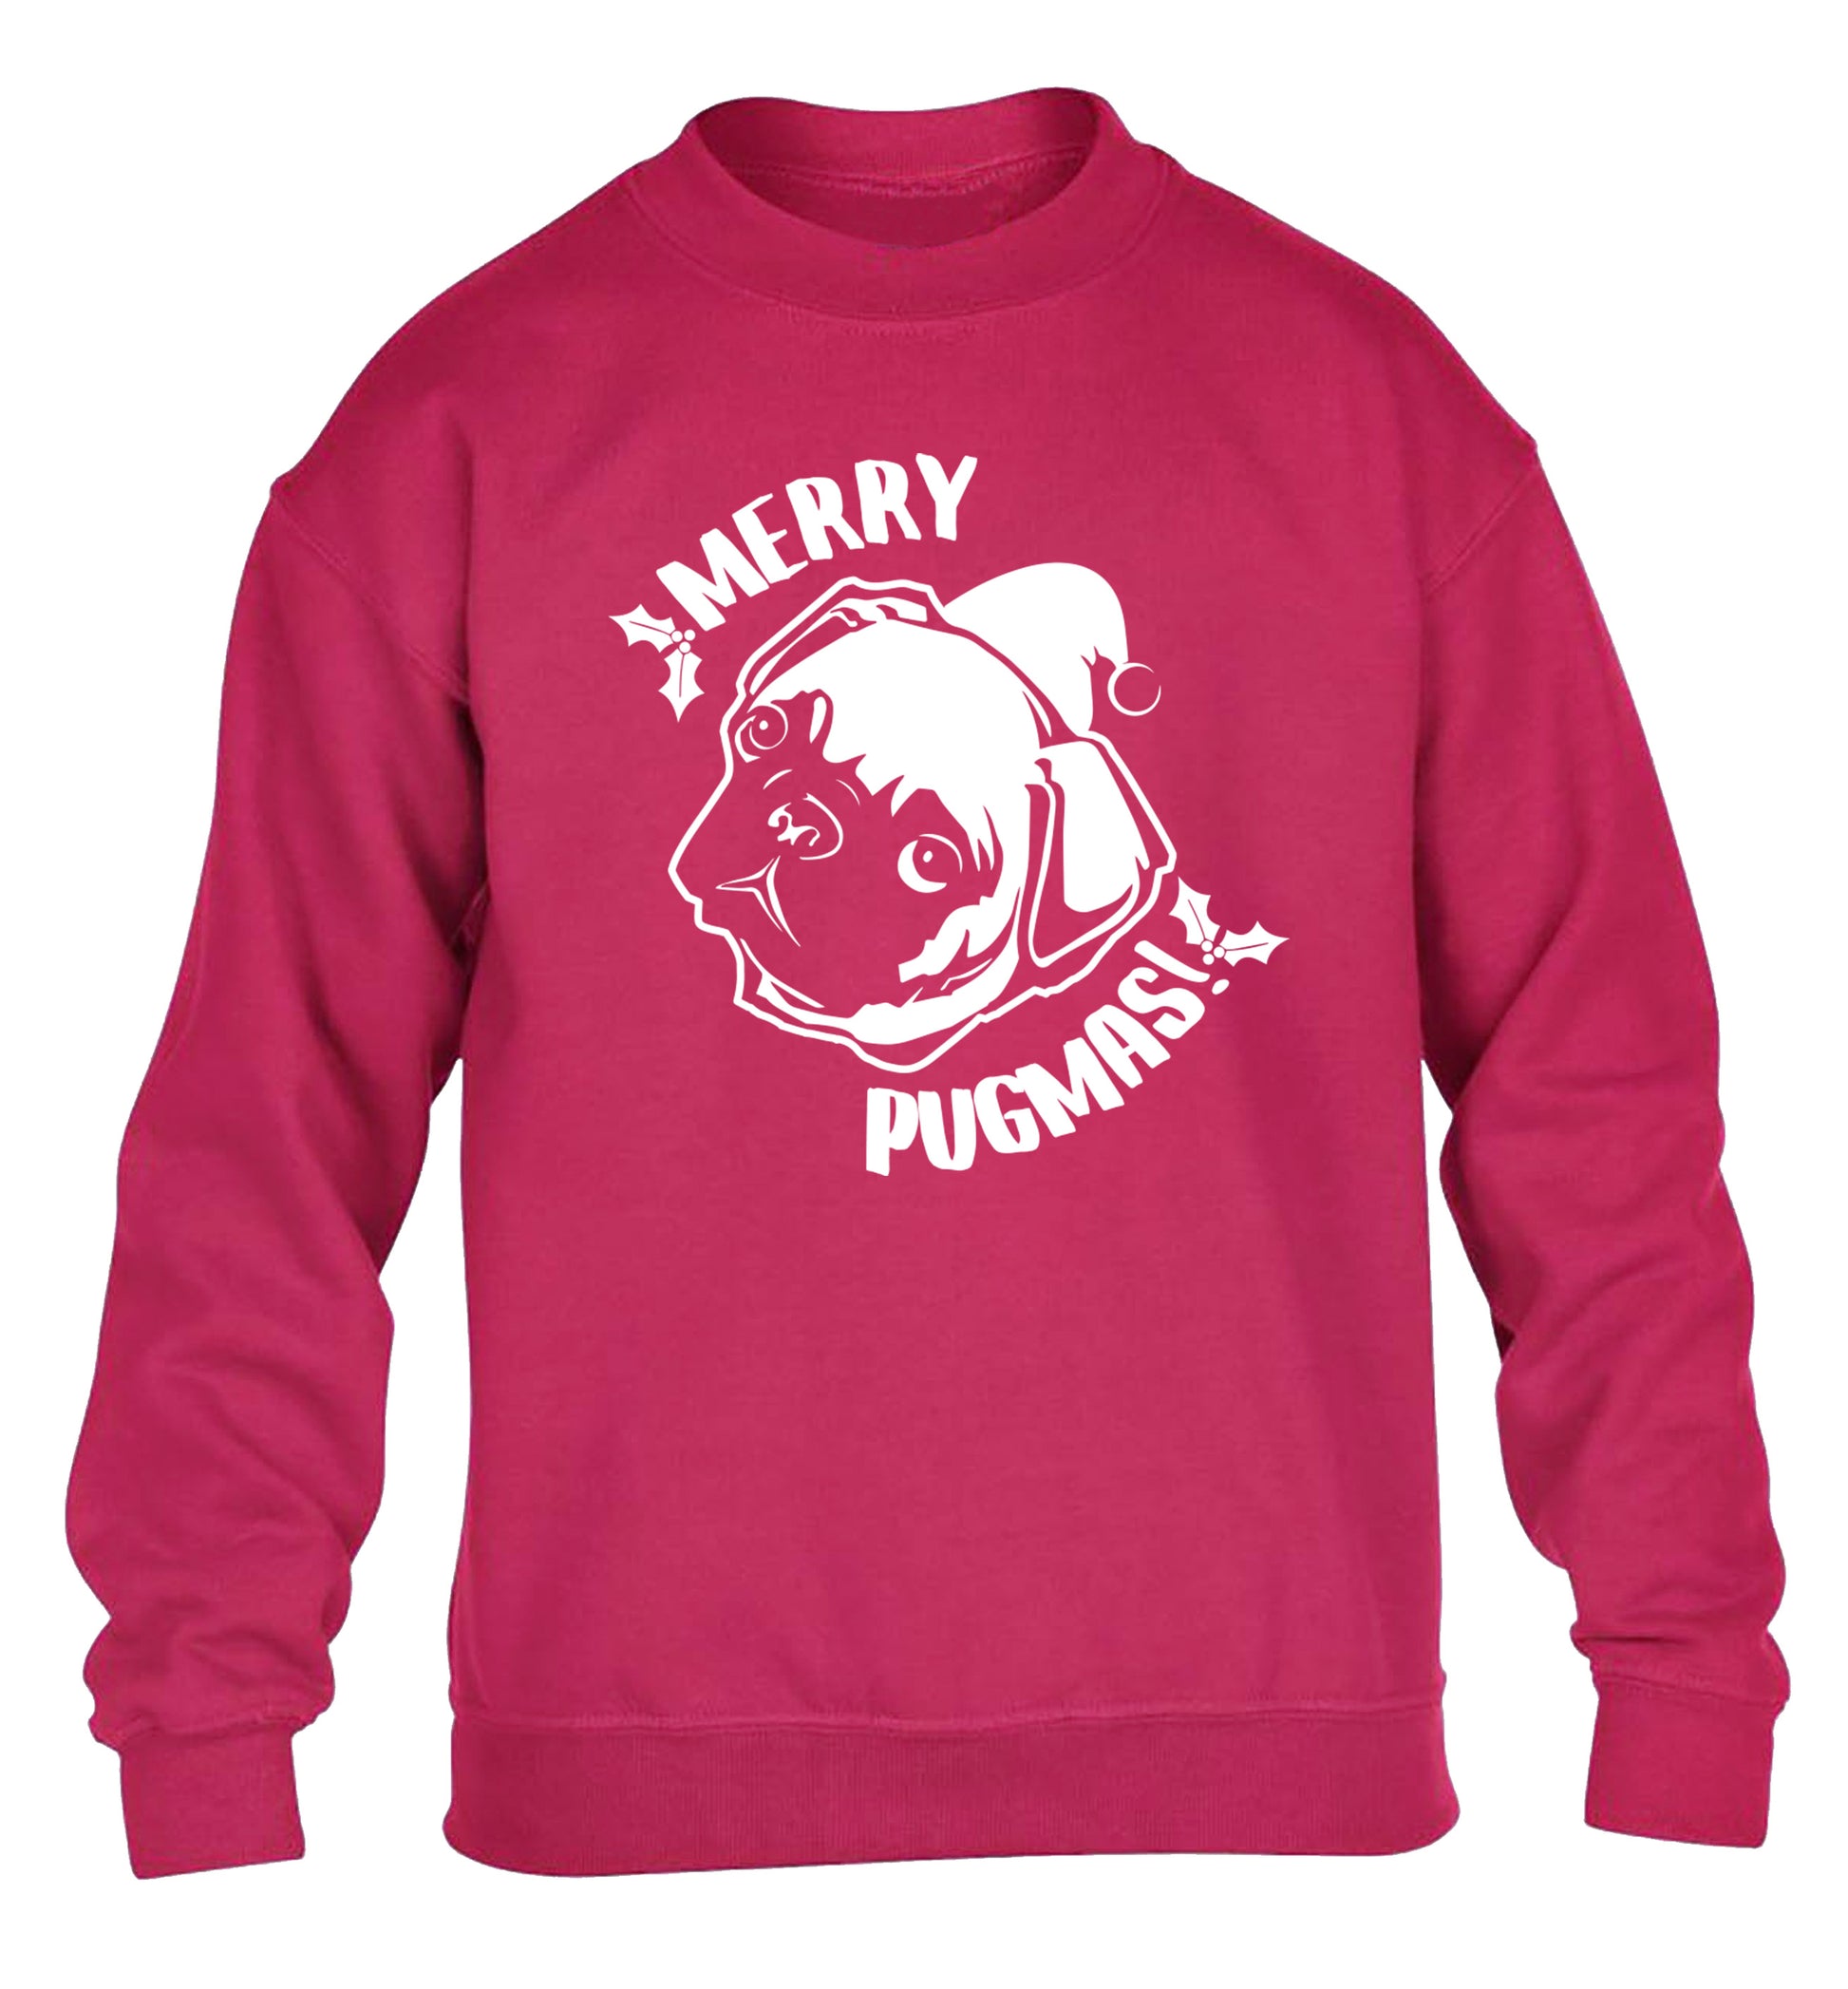 Merry Pugmas children's pink sweater 12-14 Years